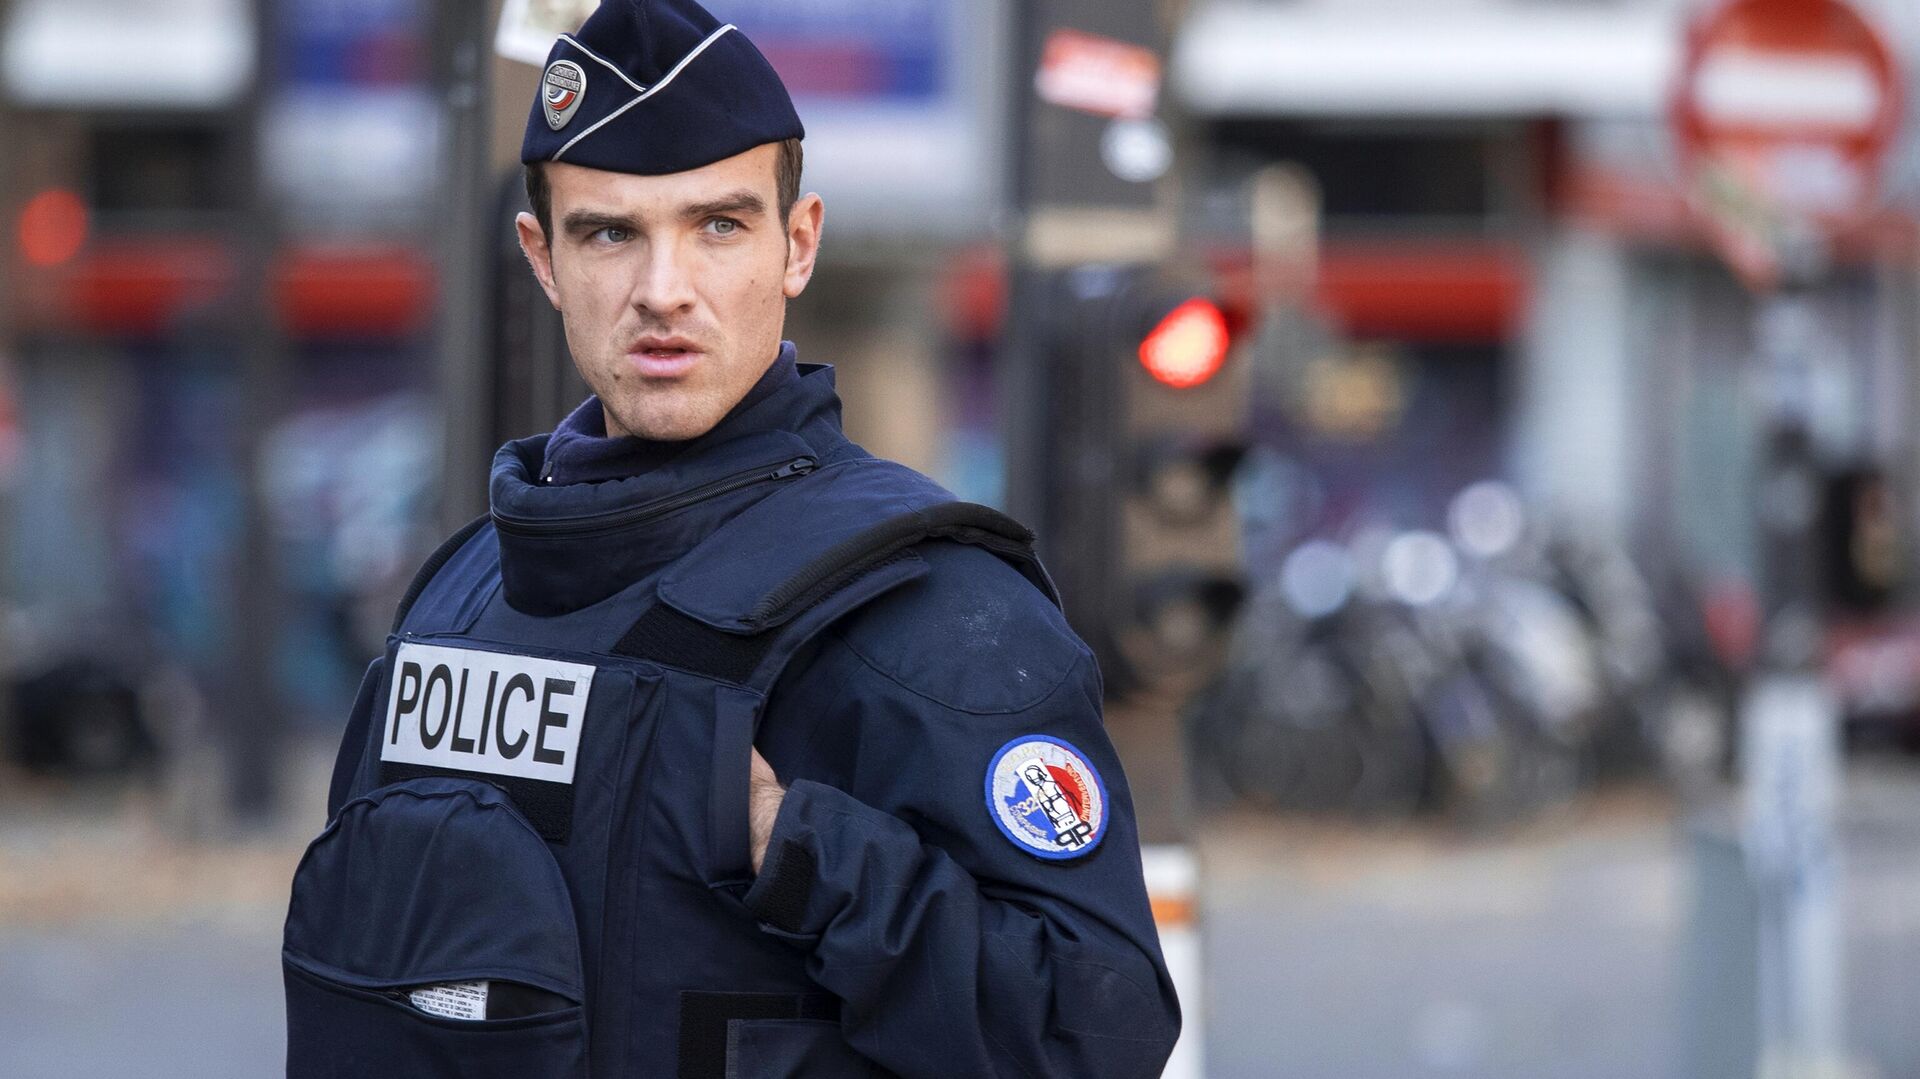 Во Франции задержали подозреваемых в рассылке угроз о взрывах в лицеях